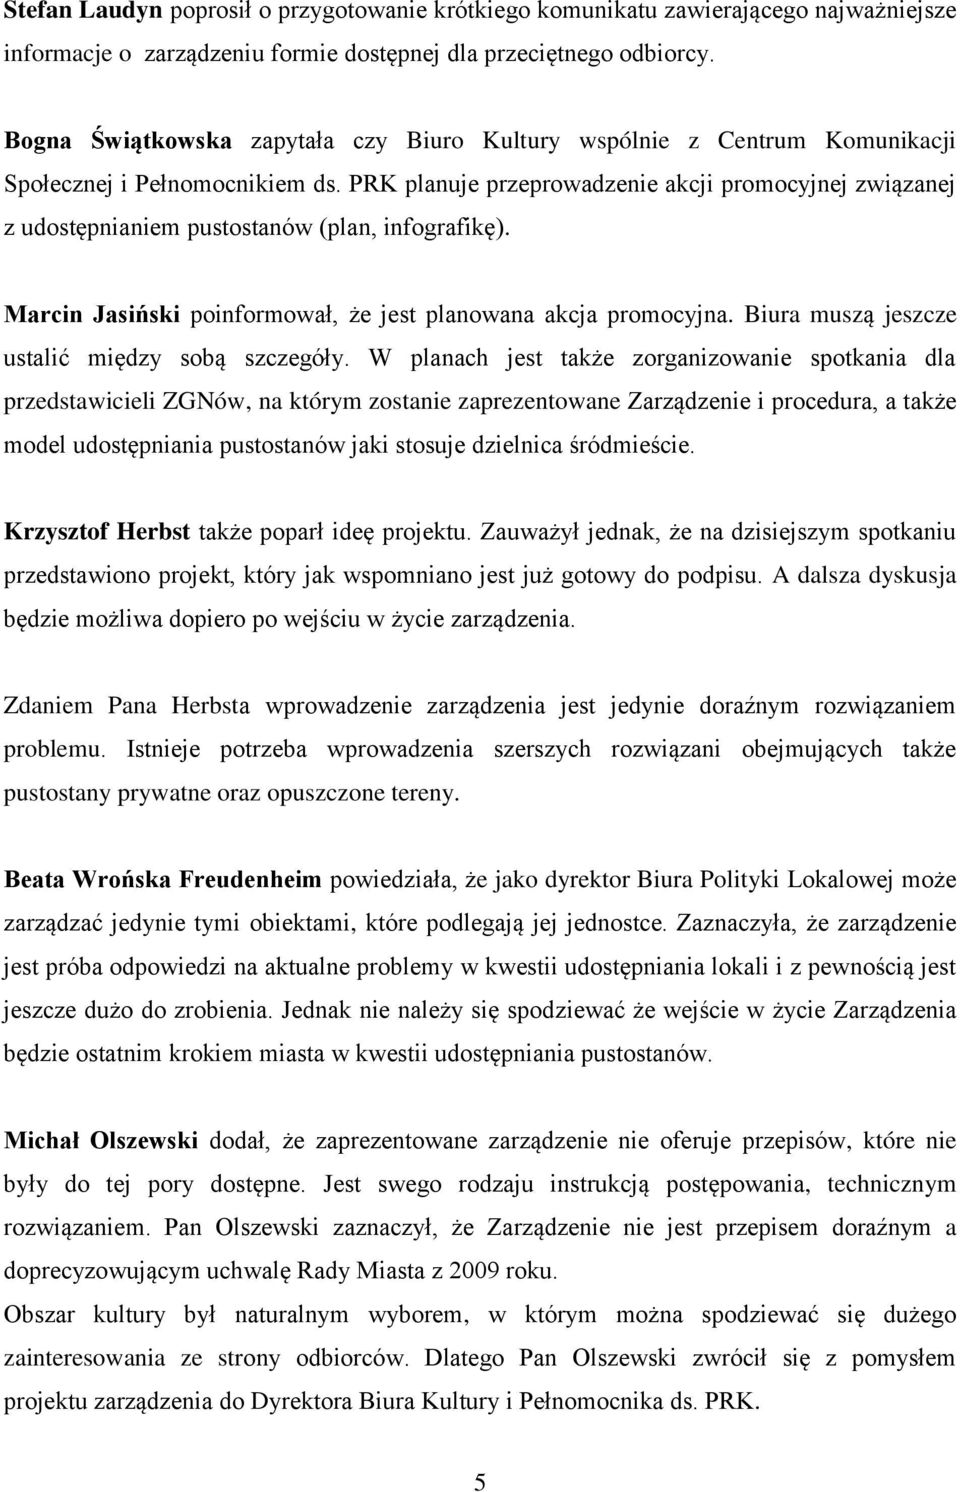 PRK planuje przeprowadzenie akcji promocyjnej związanej z udostępnianiem pustostanów (plan, infografikę). Marcin Jasiński poinformował, że jest planowana akcja promocyjna.